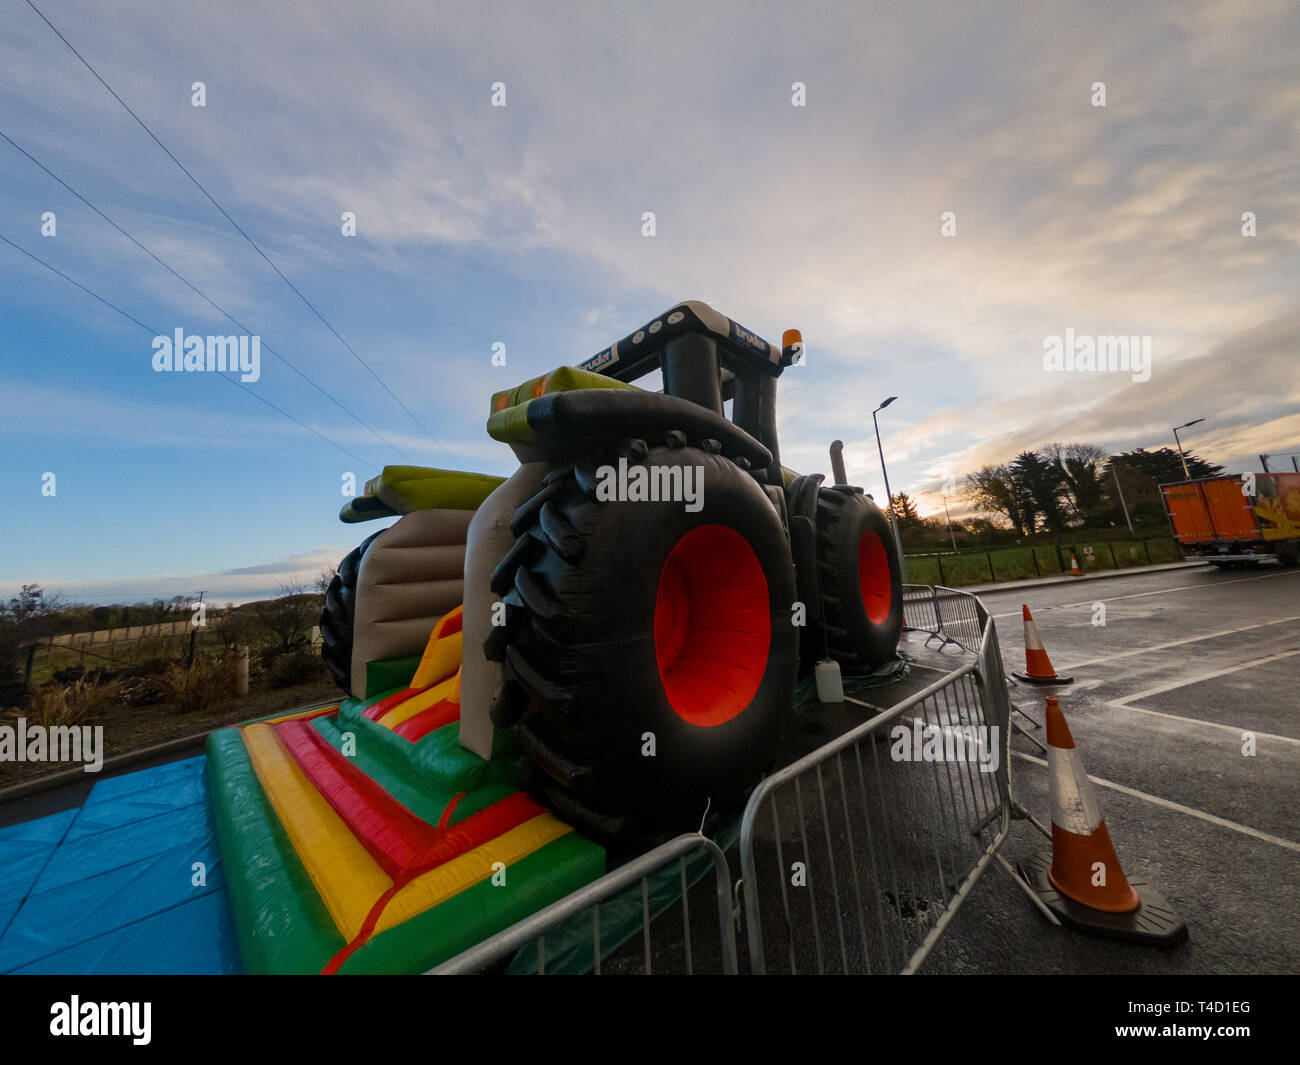 Dublin, 27.Oktober: Morgen Blick auf eine riesige Baustelle auto Form aufblasbare Spielzeug am 27.Oktober 2018 in Dublin, Irland Stockfoto